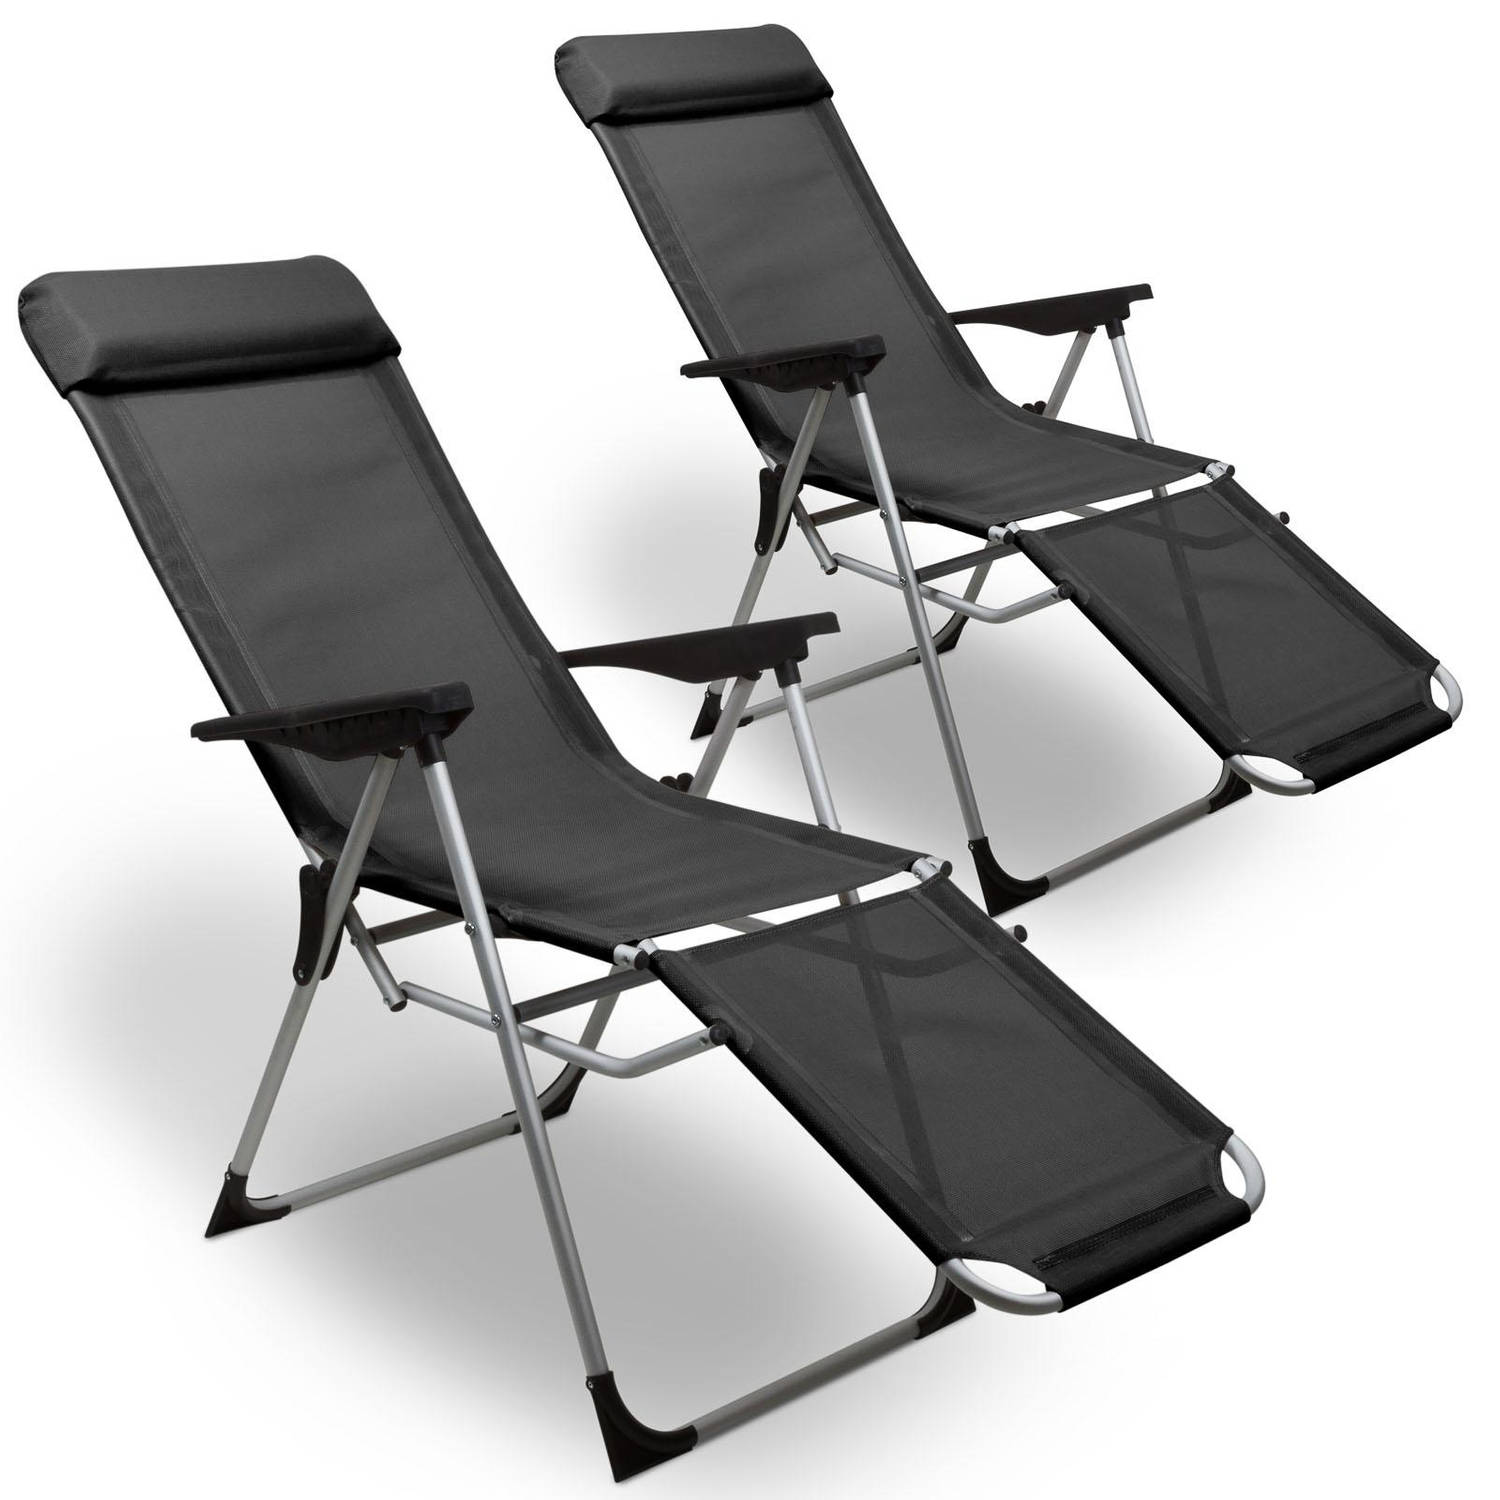 4Goodz 2x Ventilerende Relaxstoelen in 5 Standen verstelbaar - Grijs